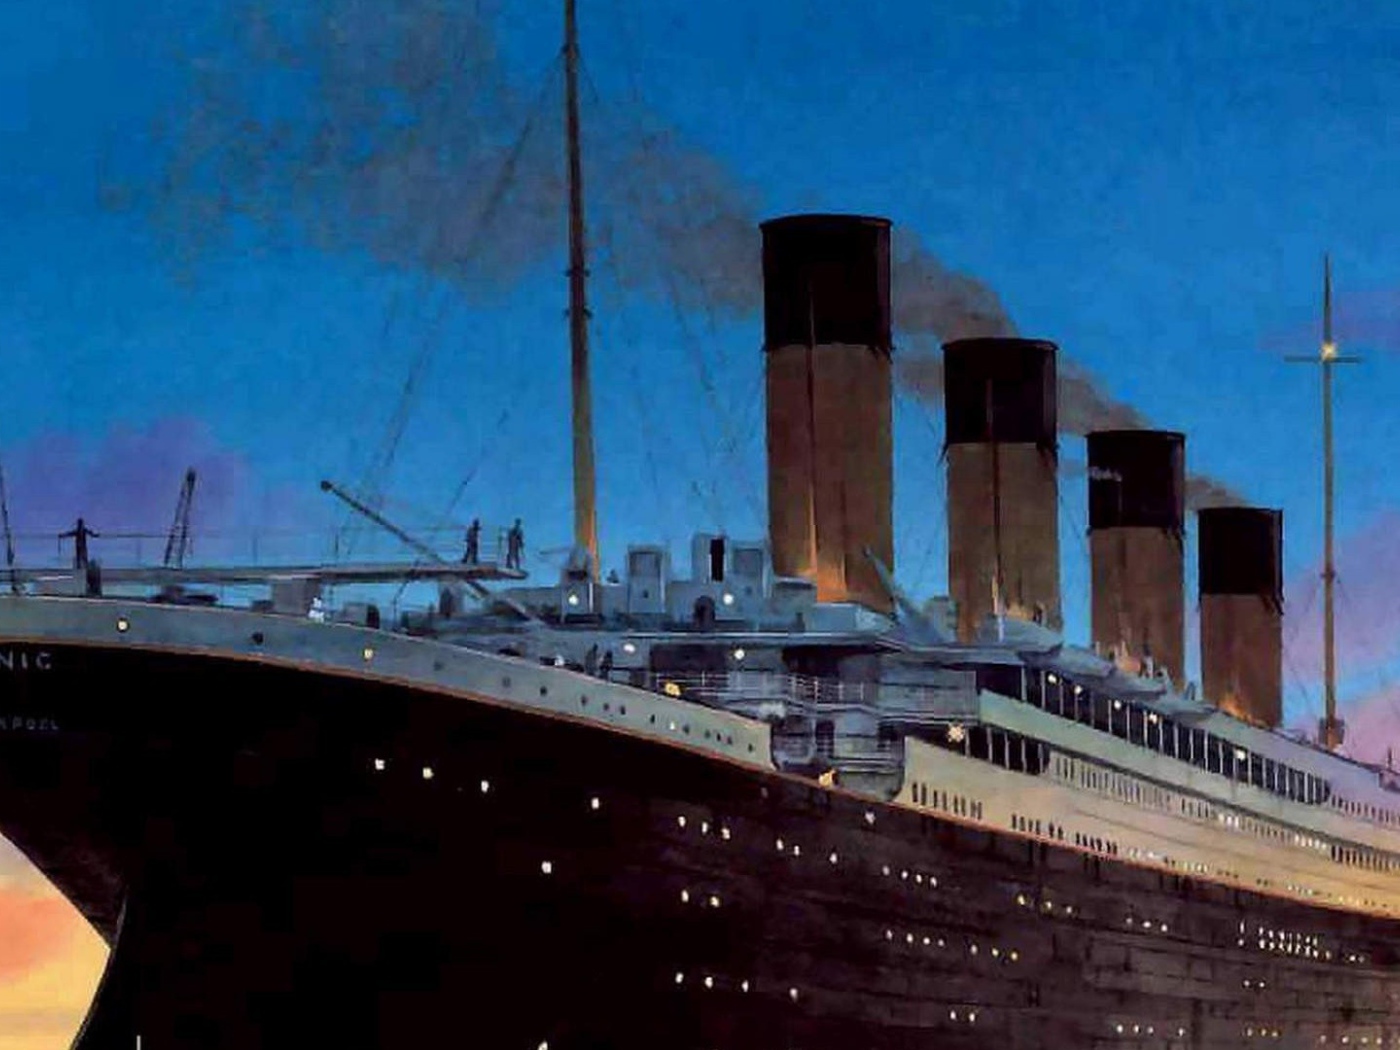 Titanic under the British flag